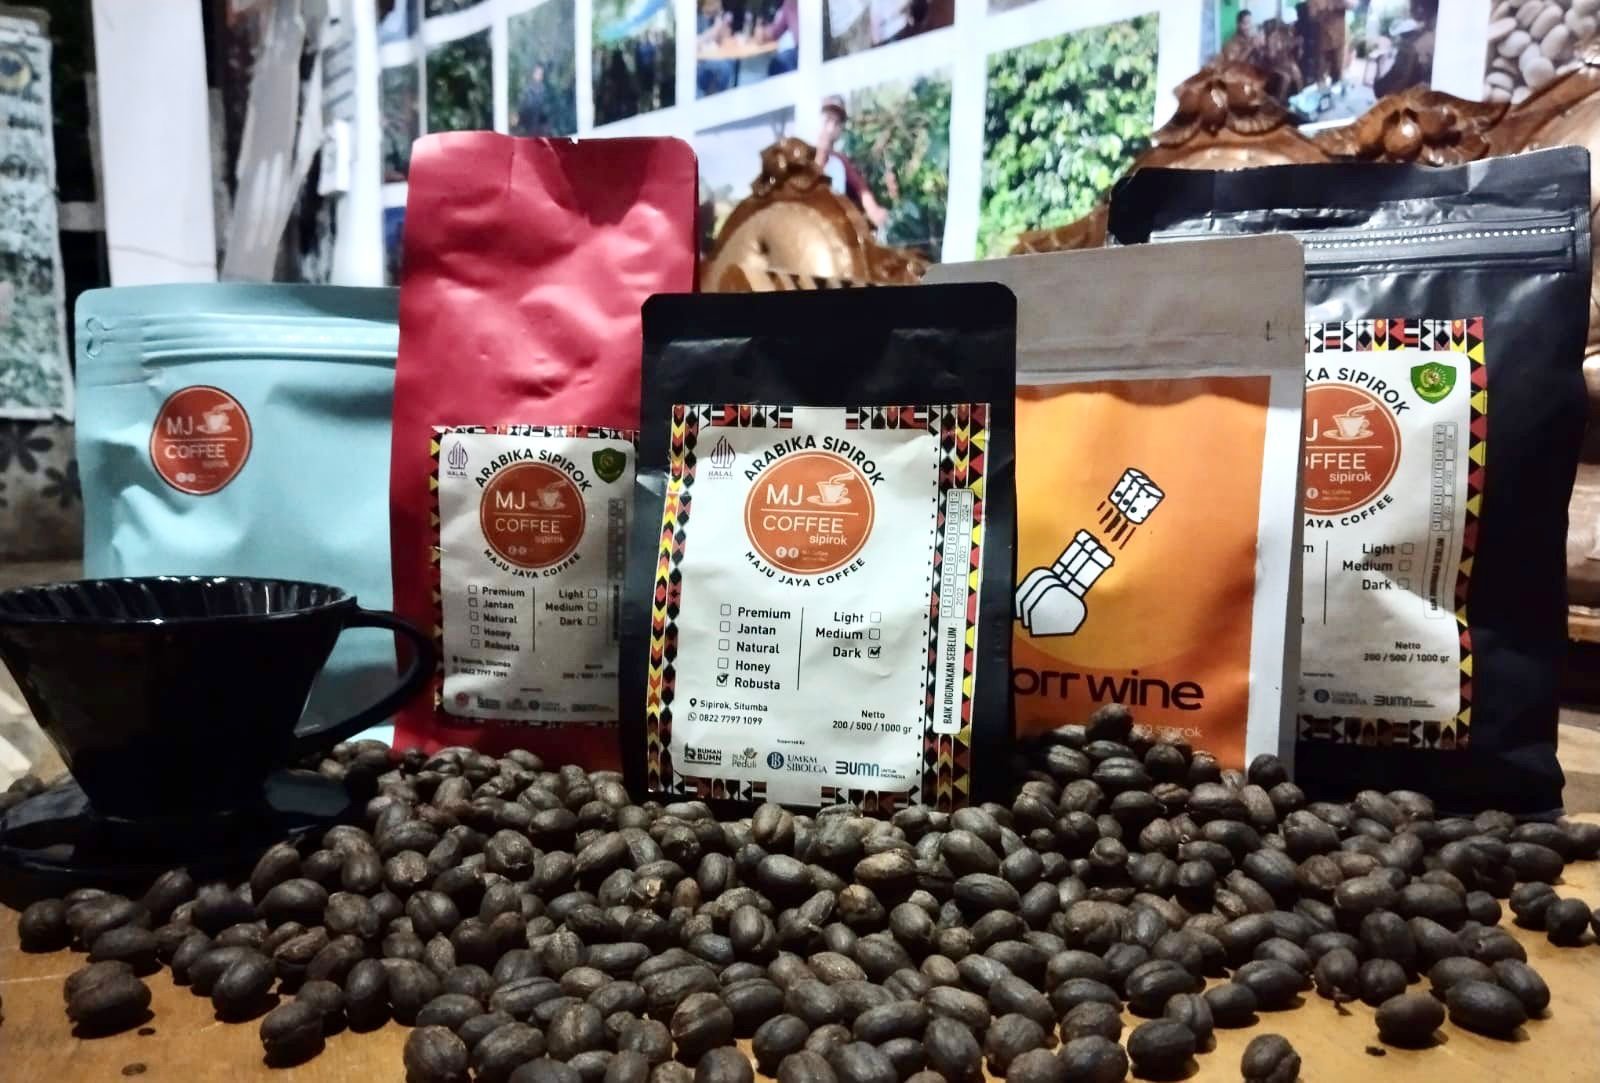 Kopi dataran tinggi Sumatera telah lama dikenal para penikmat kopi tanah air dengan cita rasa khasnya. Salah satu yang kini turut popular dan mendunia adalah Kopi Sipirok, brand kopi dari Tapanuli Selatan.